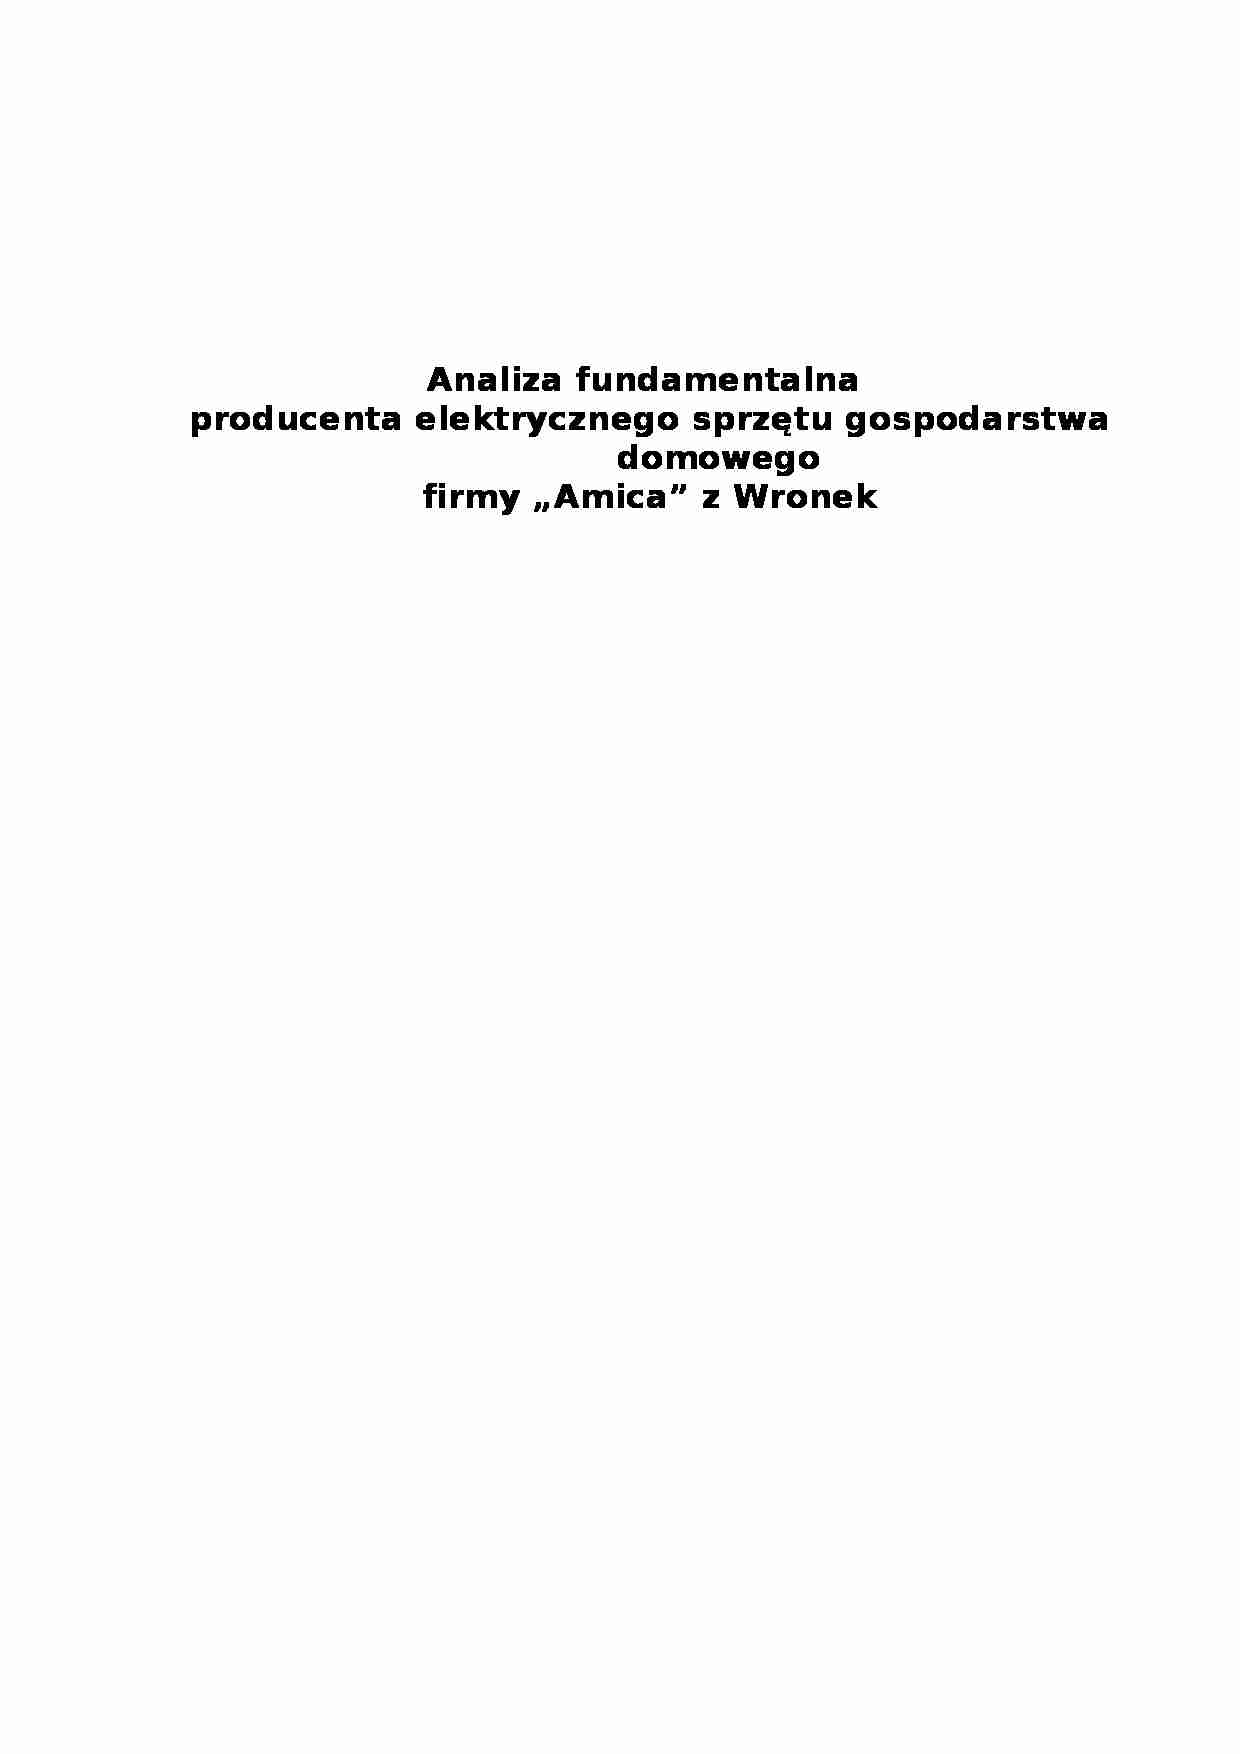 Analiza fundamentalna firmy Amica - strona 1